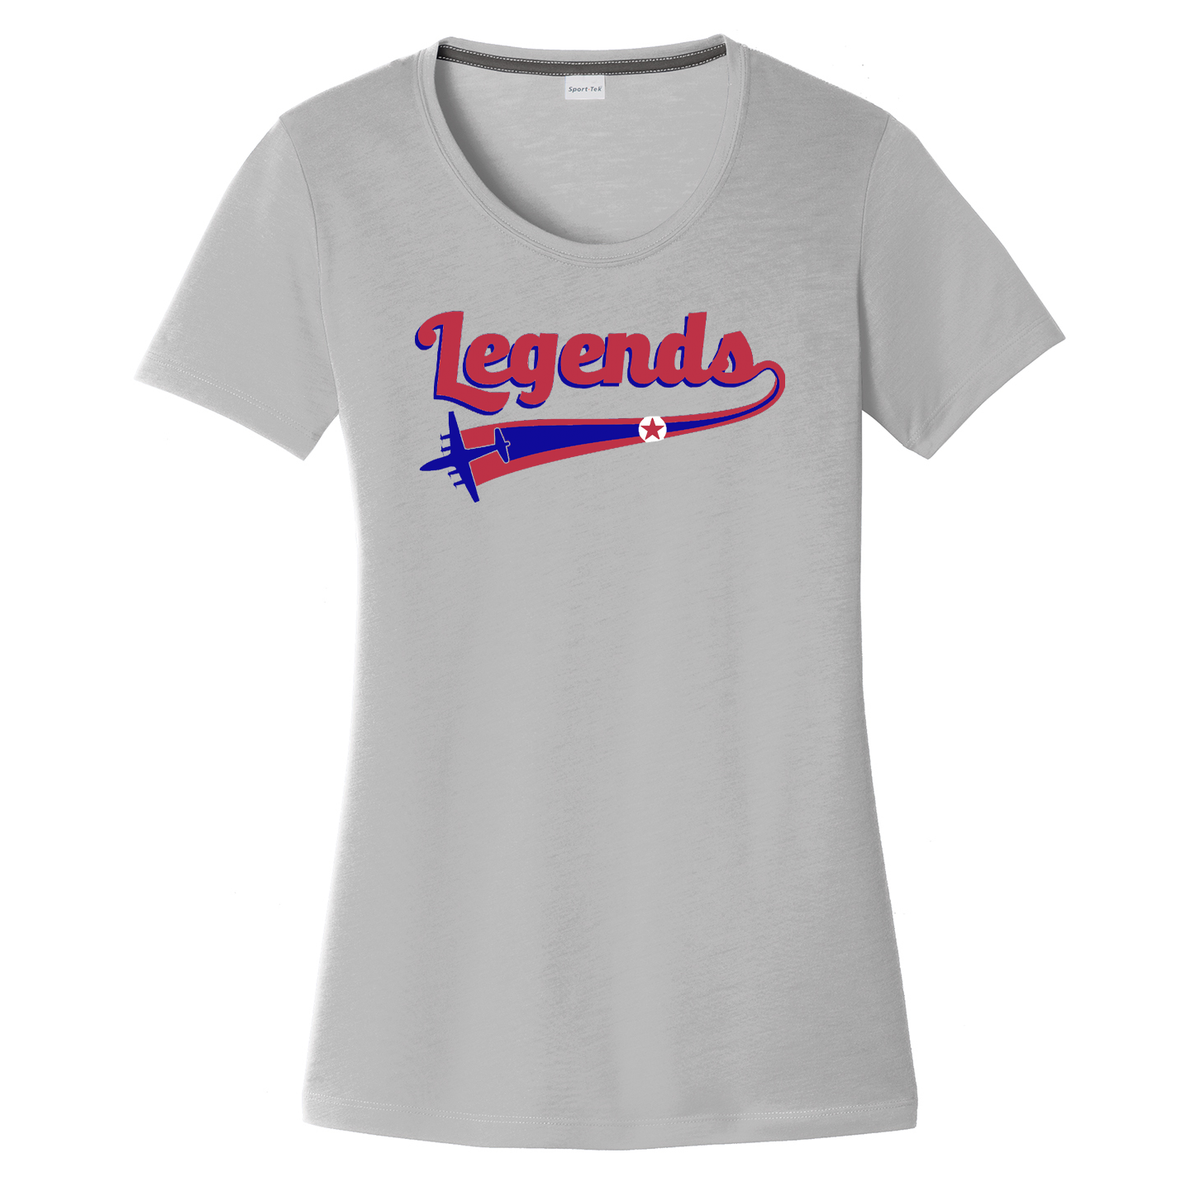 B17 Legends Baseball Women's CottonTouch Performance T-Shirt